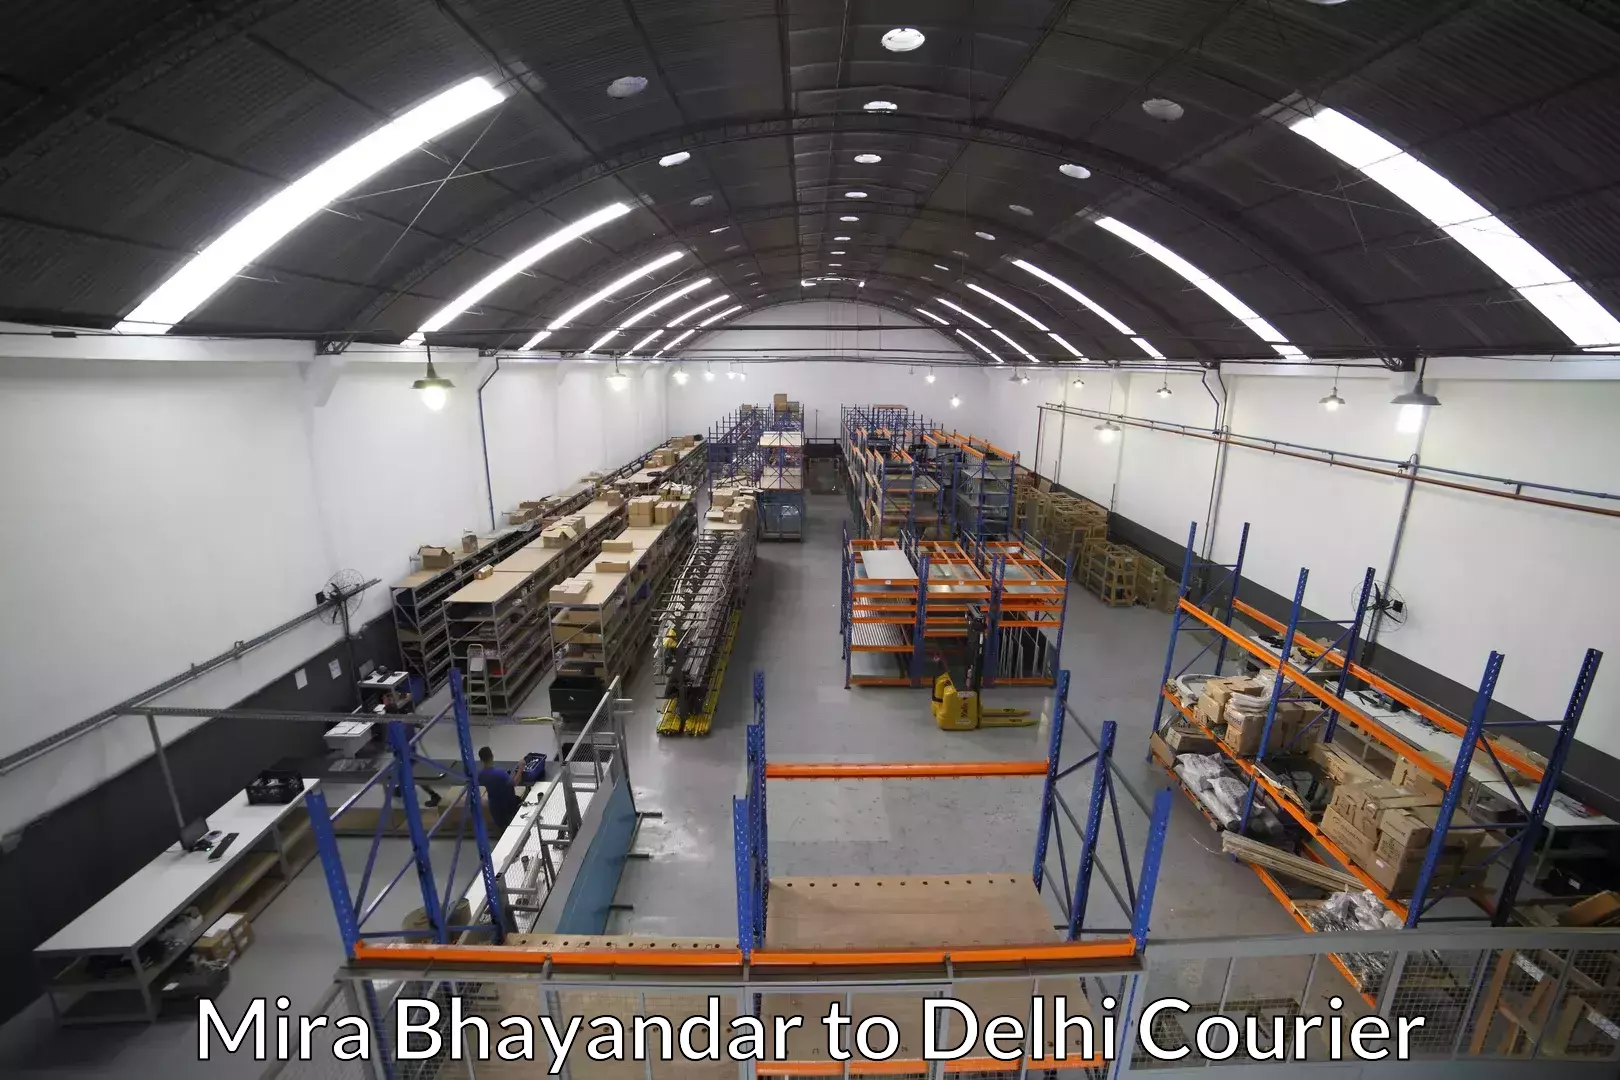 Furniture relocation experts Mira Bhayandar to Jawaharlal Nehru University New Delhi